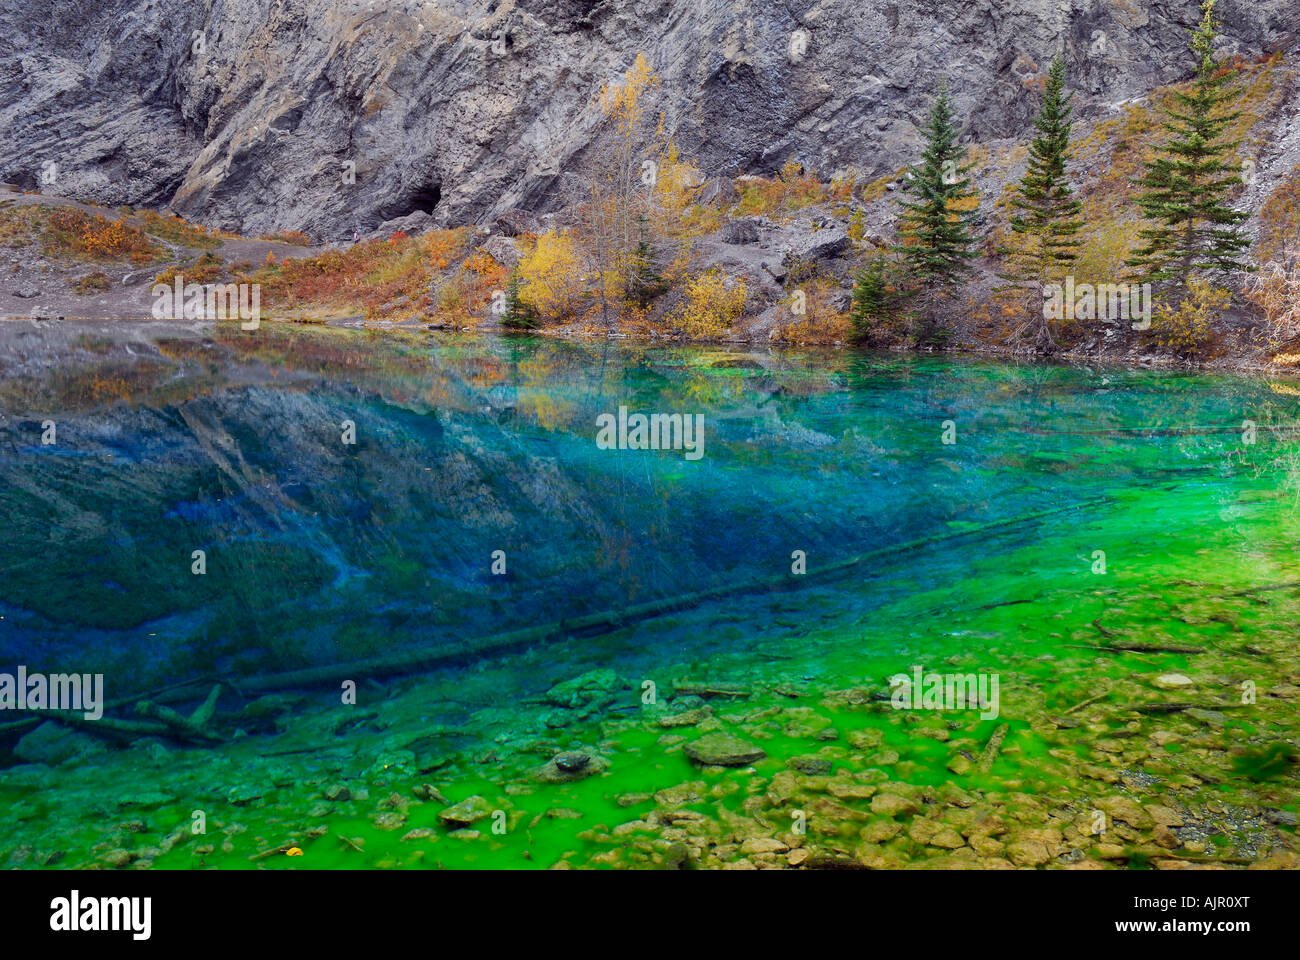 Blaue und grüne Algen in den klaren Indigo und fluoreszierenden grünen Wasser von Grassi Lakes Canmore Alberta, Kanada Stockfoto